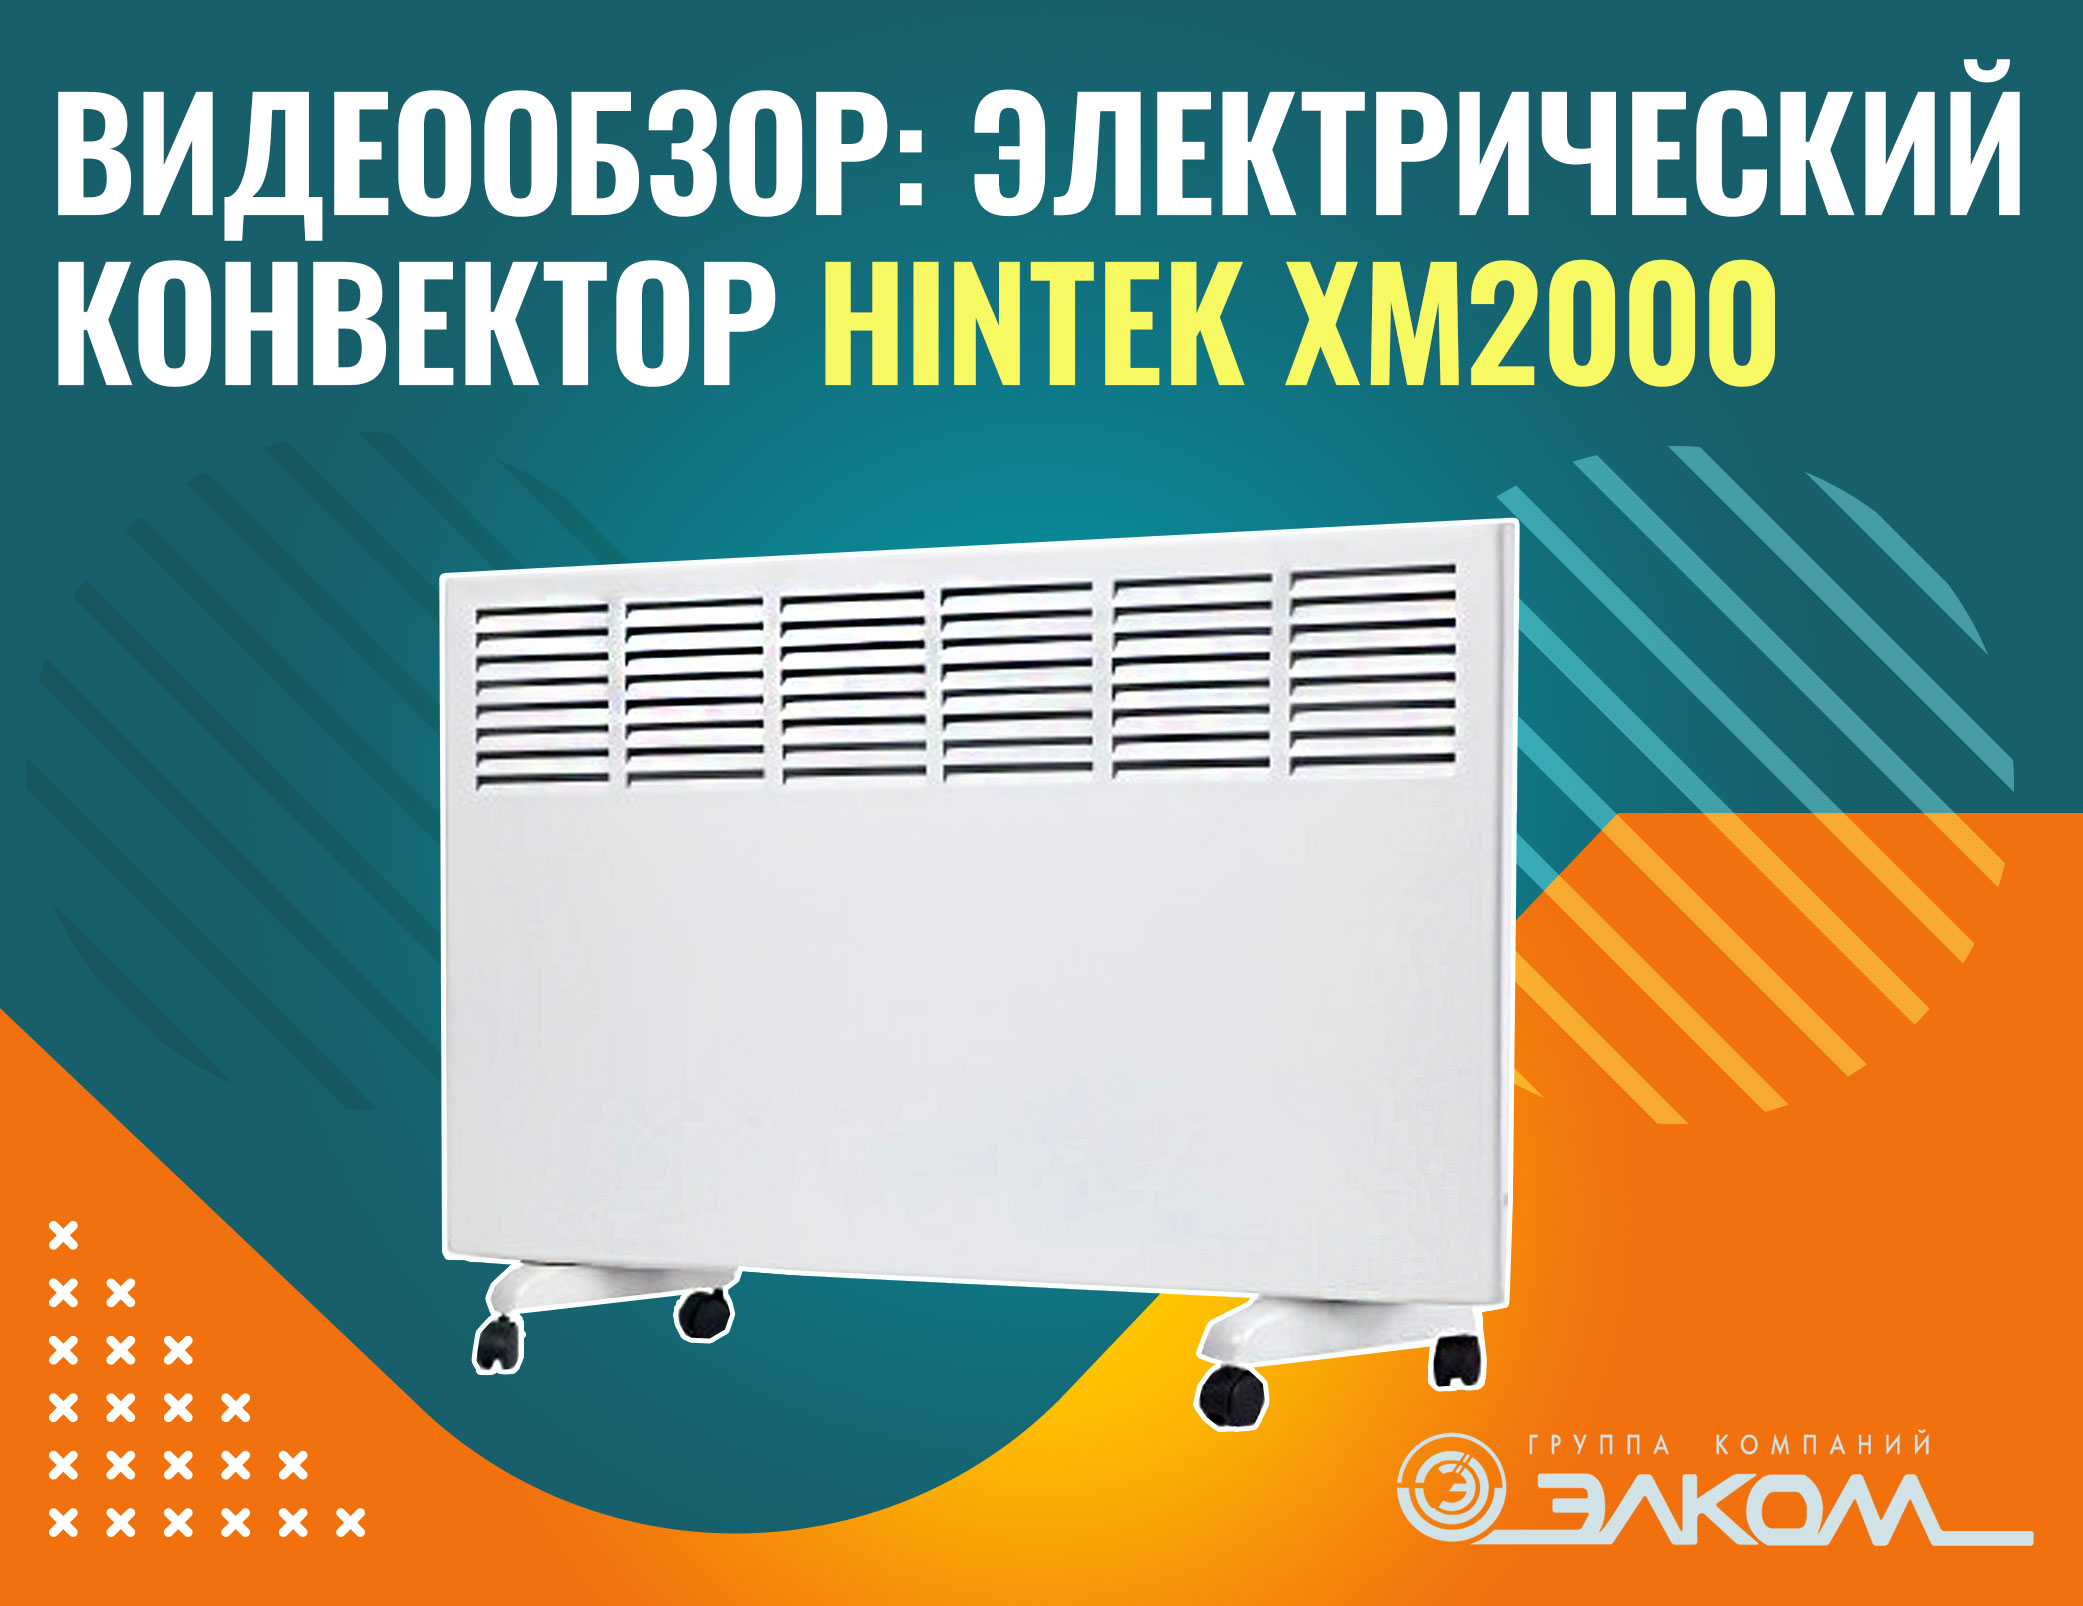 Видеообзор: электрический конвектор HINTEK XM2000